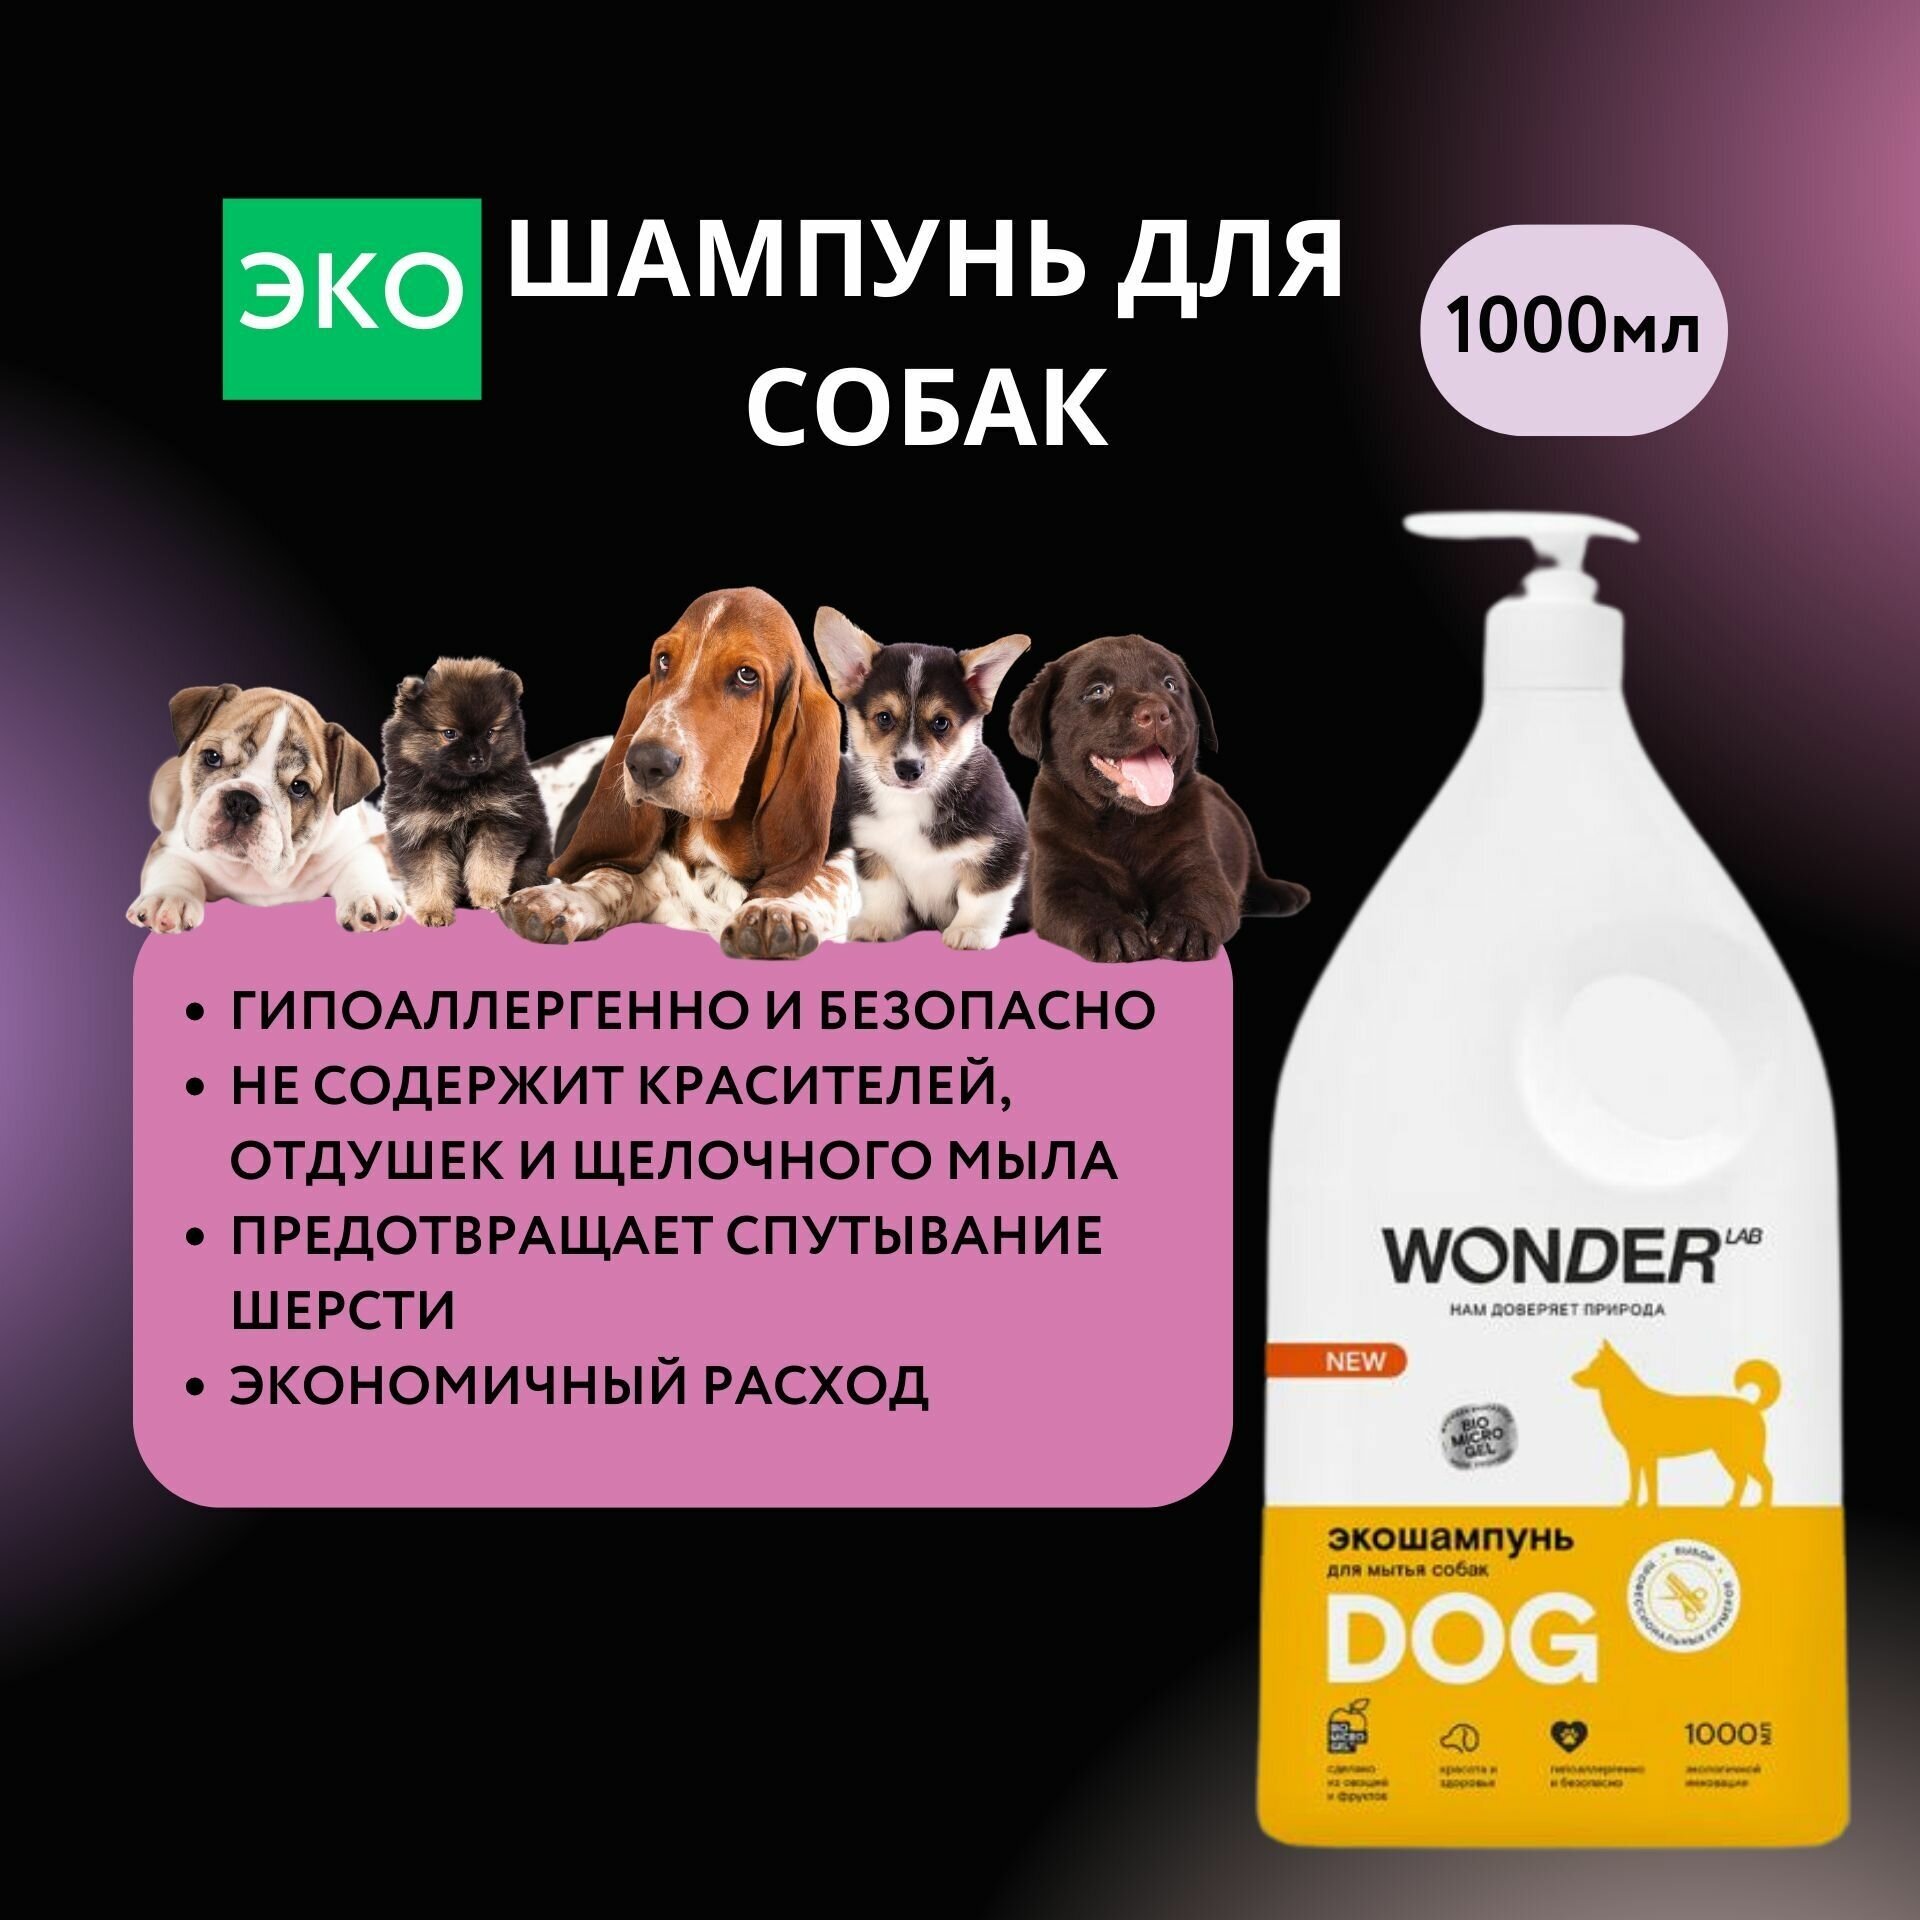 Гипоаллергенный шампунь для собак WONDER LAB, экологичный, без запаха, 1000 мл - фотография № 1